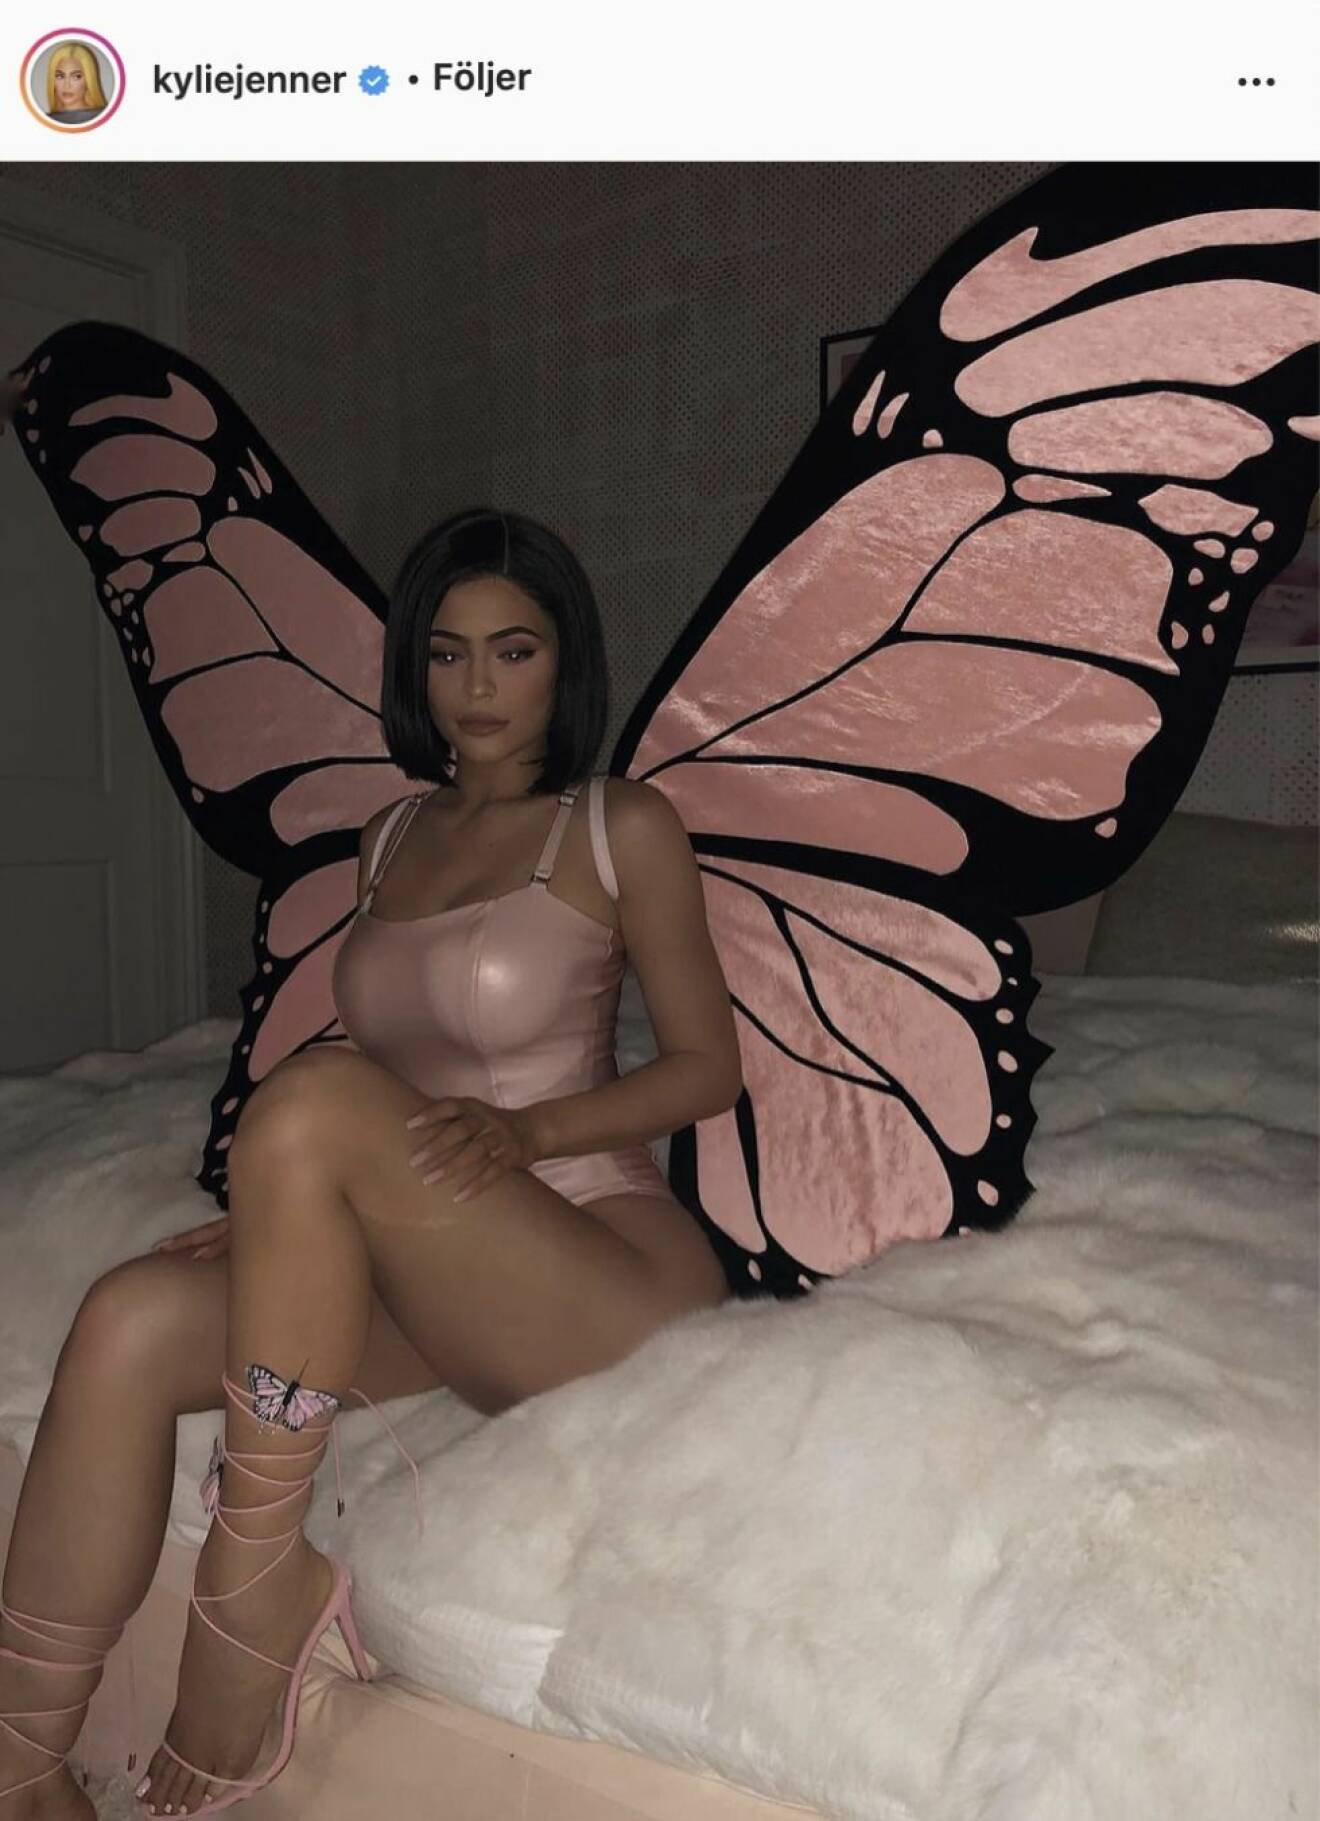 Kylie Jenner som fjäril